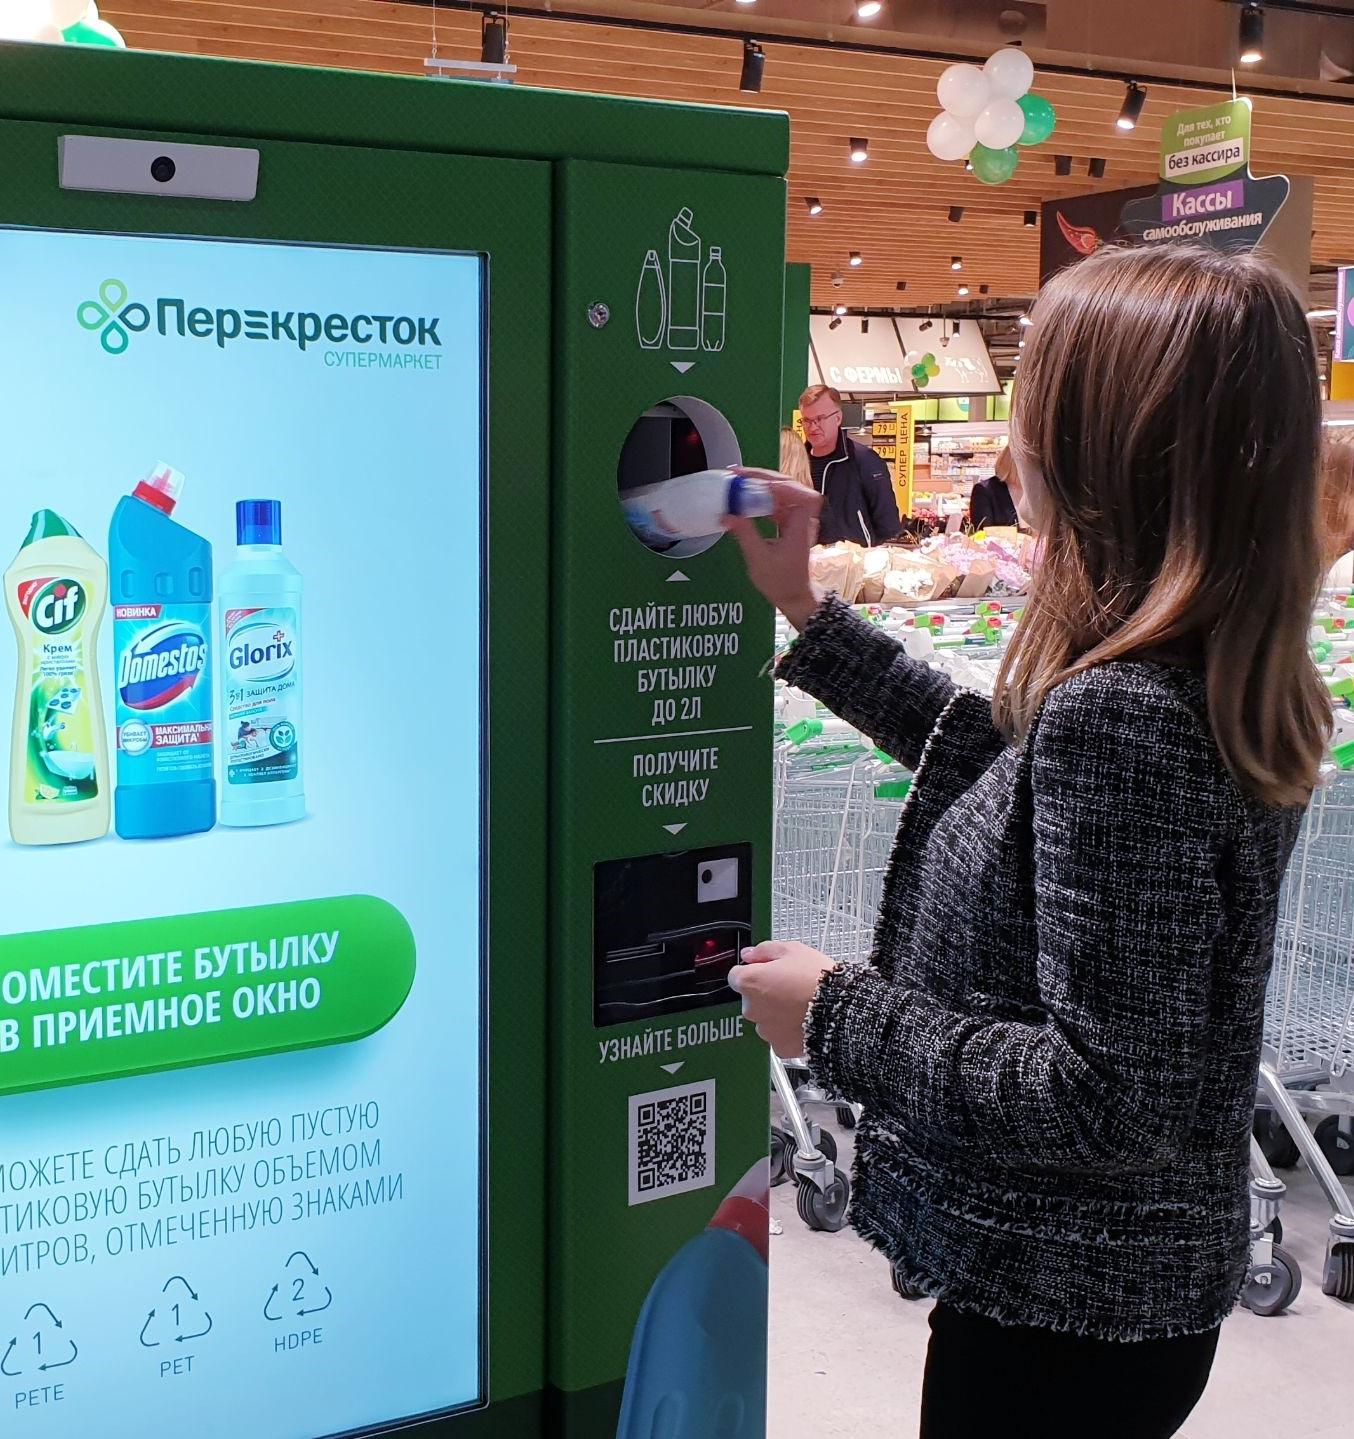 Вклад в экологию и свой бизнес: автоматы по сбору пластиковых бутылок как прогрессивная бизнес идея